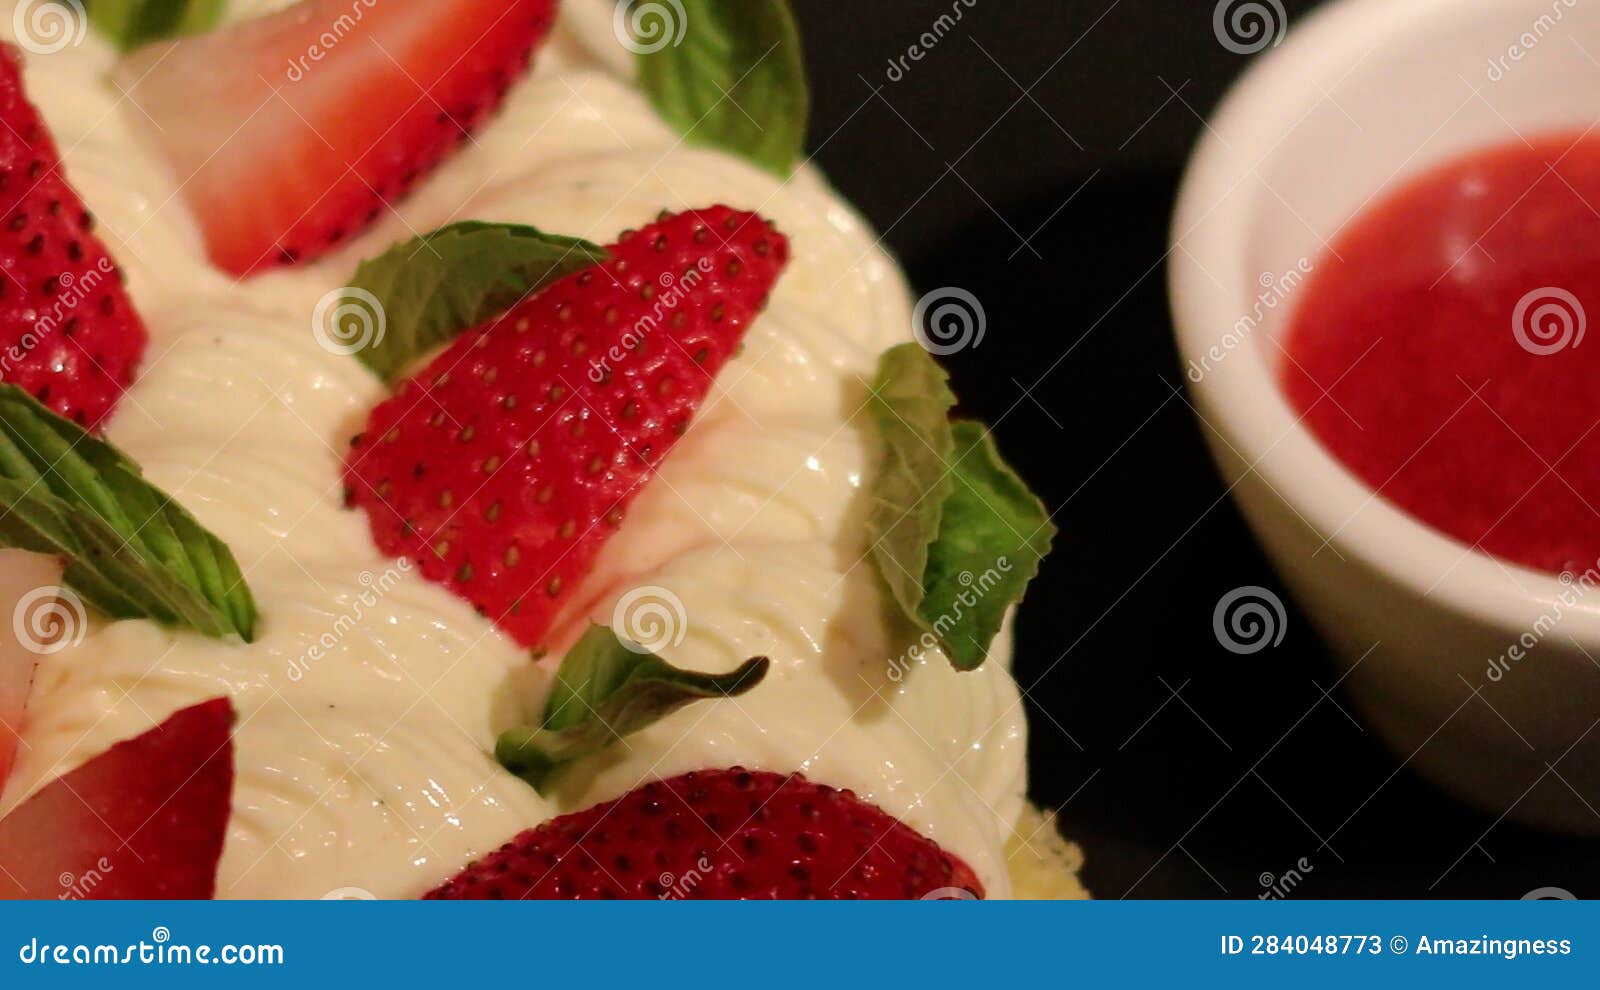 a la minute strawberry shortcake, dessert, le cochon blanc.